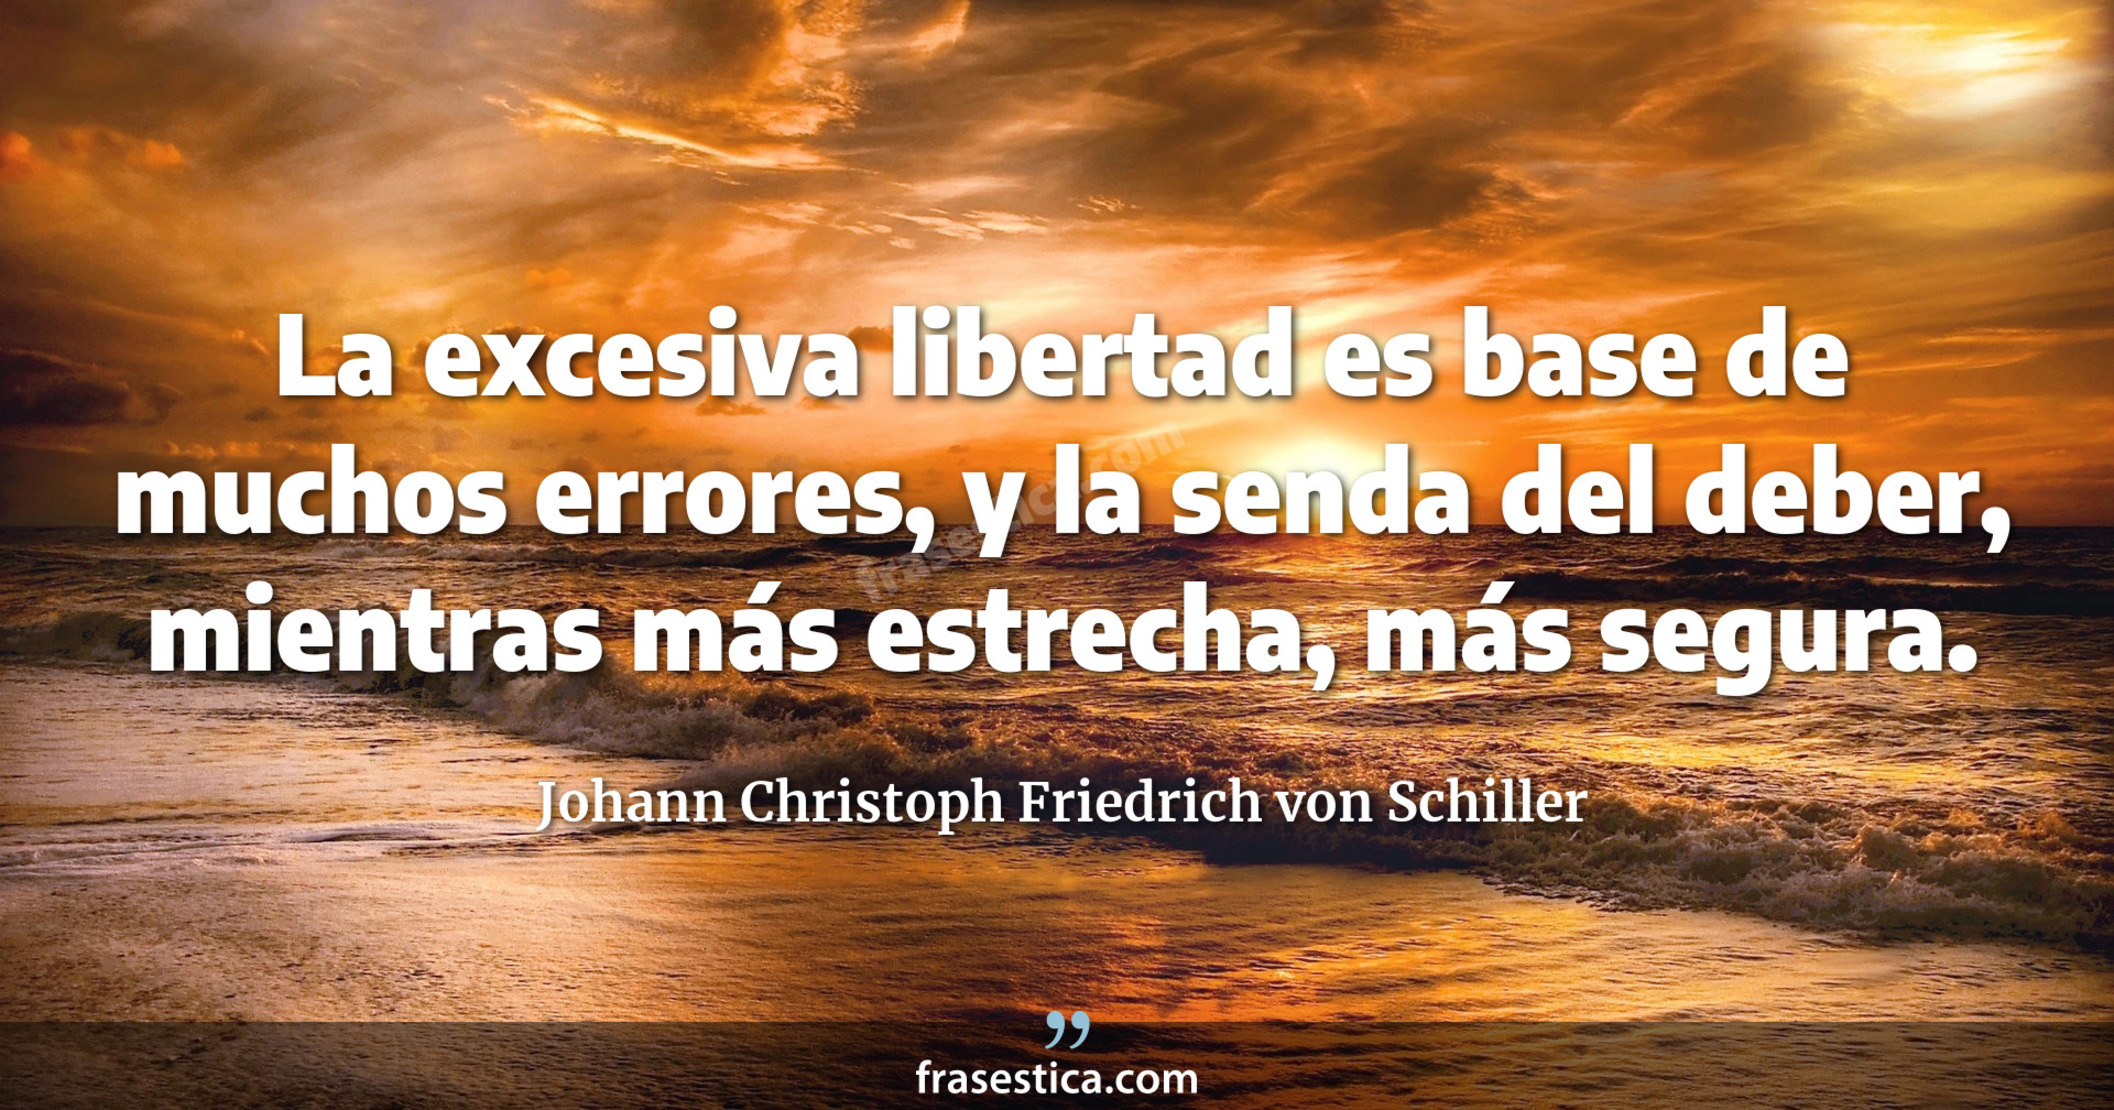 La excesiva libertad es base de muchos errores, y la senda del deber, mientras más estrecha, más segura. - Johann Christoph Friedrich von Schiller